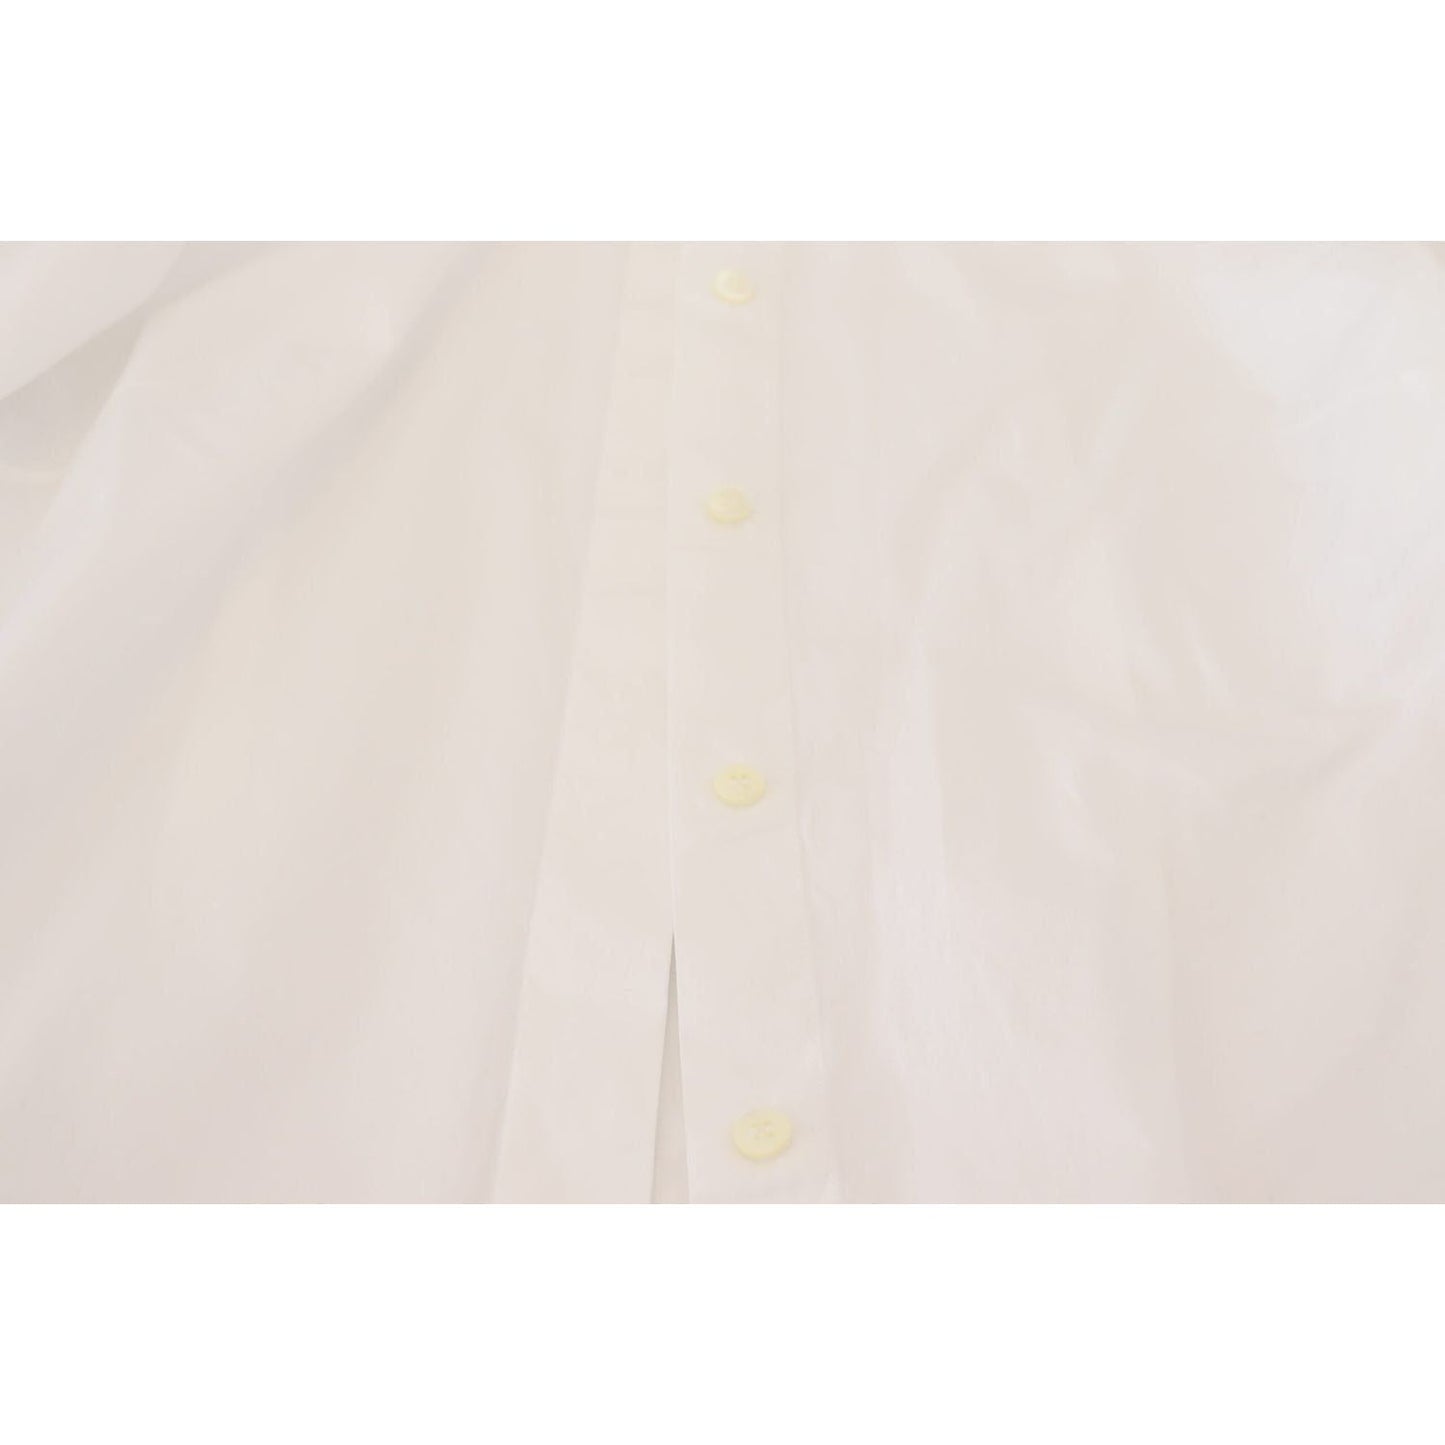 Dolce & GabbanaElegant White Cotton Button-Up TopMcRichard Designer Brands£249.00